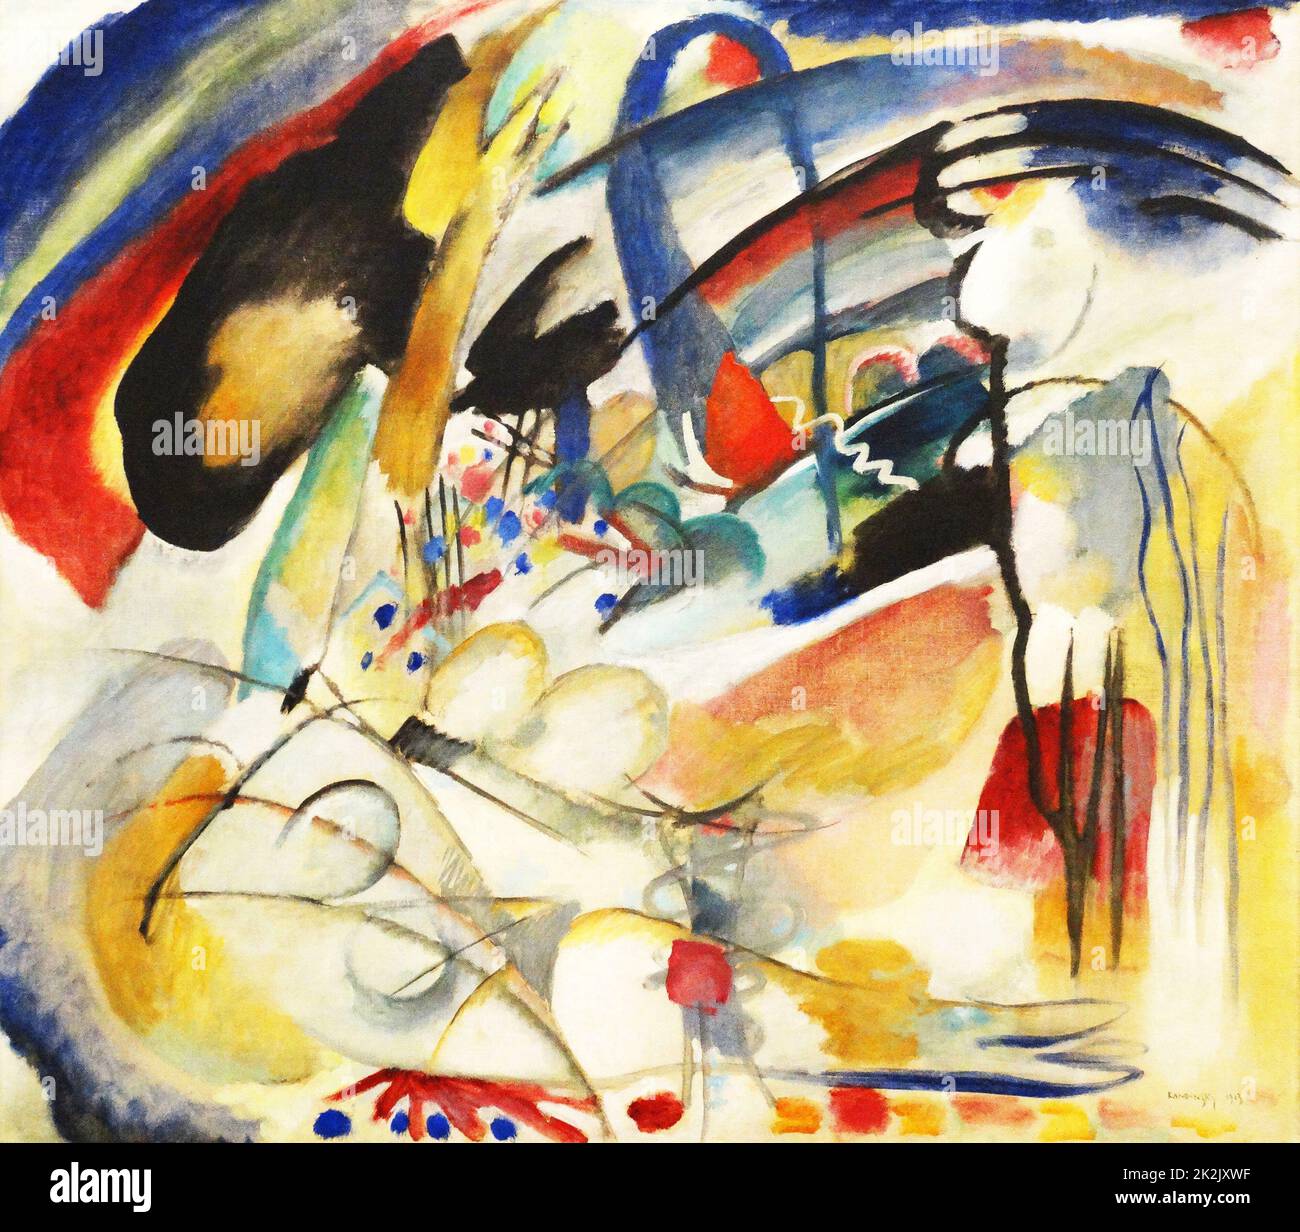 Improvisation 33 (Orient 1) (huile sur toile, 88 x 100 cm) par Wassily Kandinsky (1866-1944) un peintre et théoricien russe influent. Il est crédité de peindre les premières œuvres purement abstraites. Banque D'Images